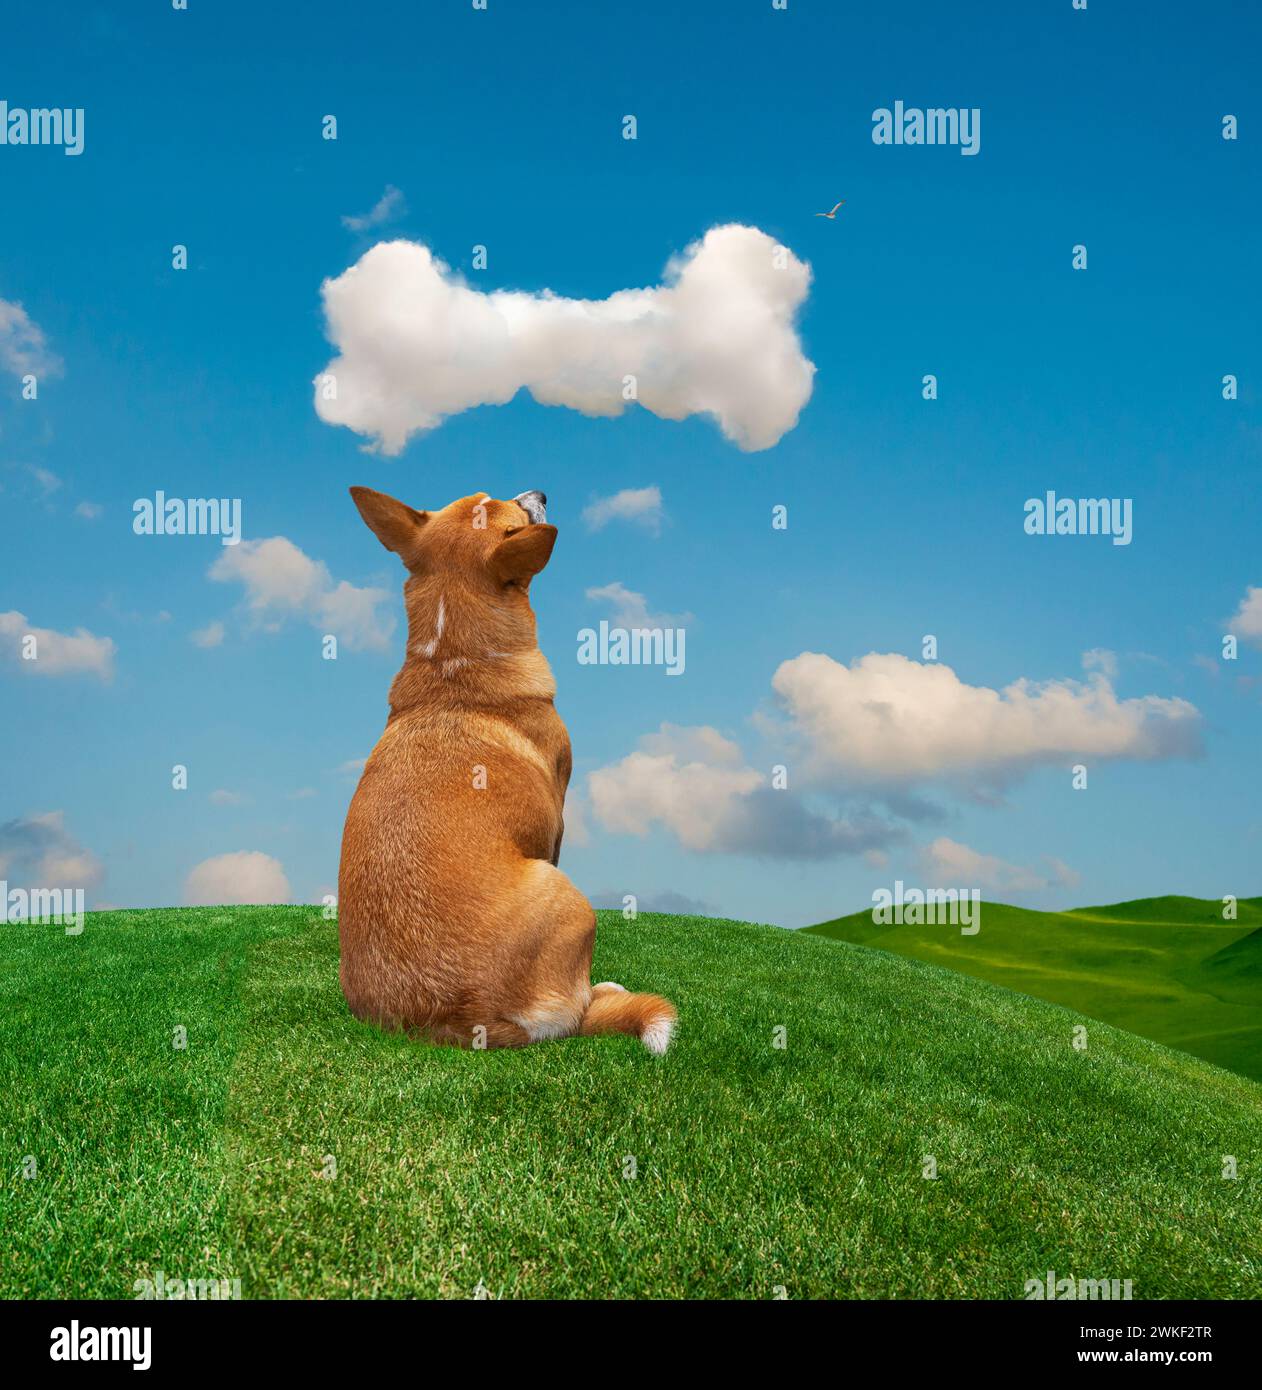 Ein Hund sitzt auf einem grasbewachsenen Hügel und starrt sehnsüchtig auf eine knochenförmige Wolke über dem Kopf in einem lustigen Bild über Wünsche, Träume und Möglichkeiten. Stockfoto